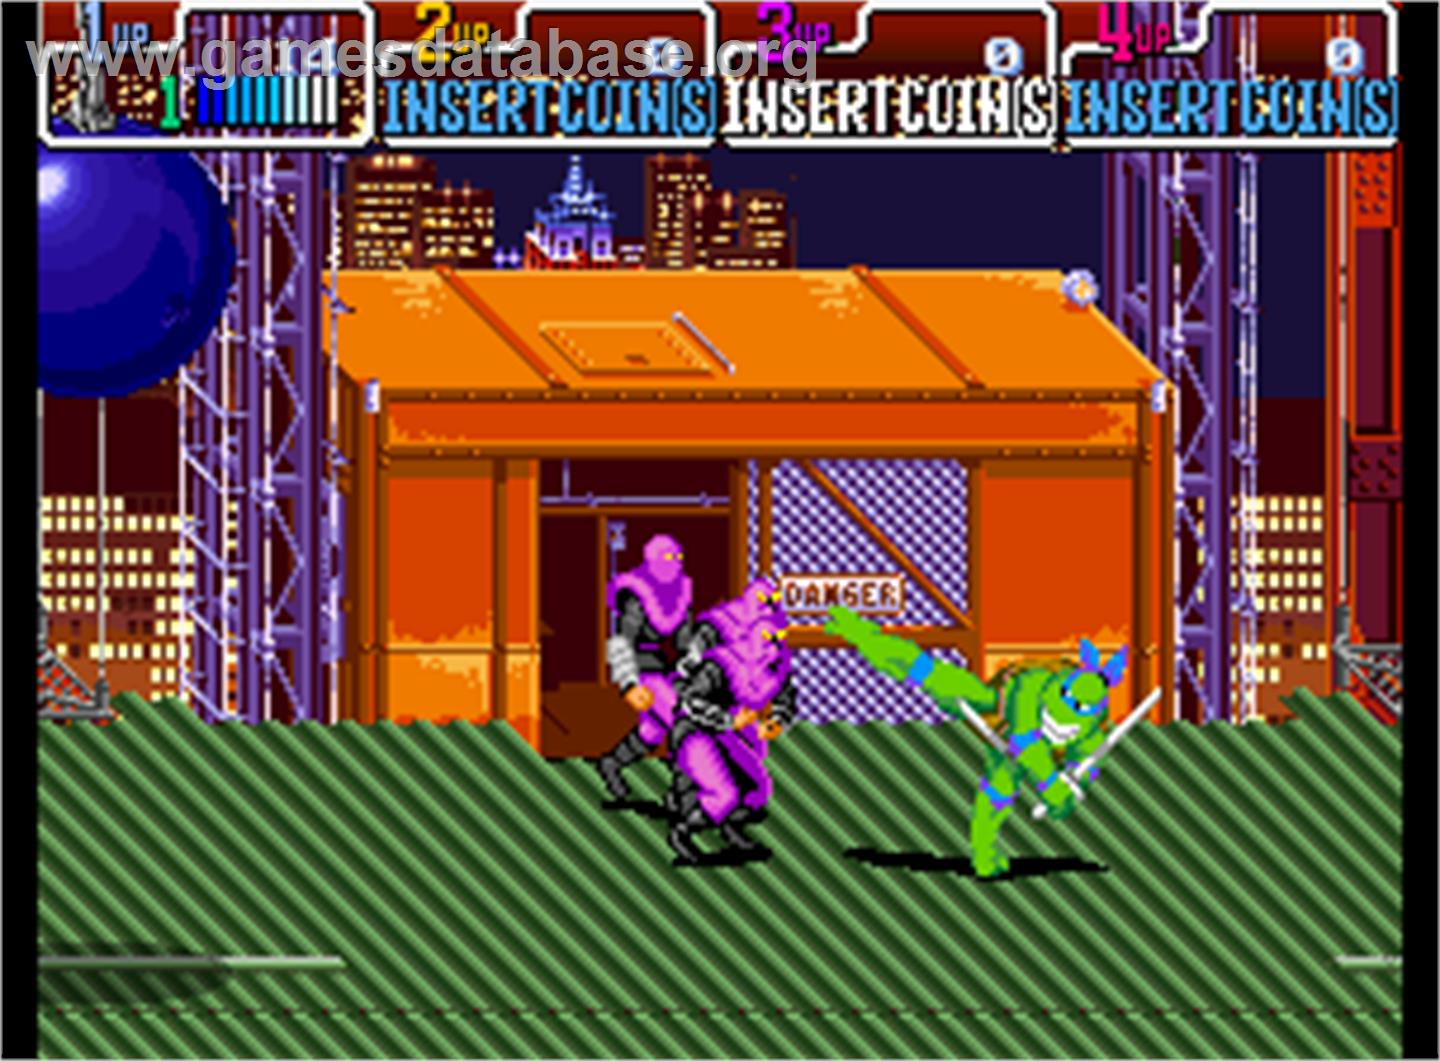 Teenage Mutant Ninja Turtles - Turtles in Time - Arcade - Artwork - In Game